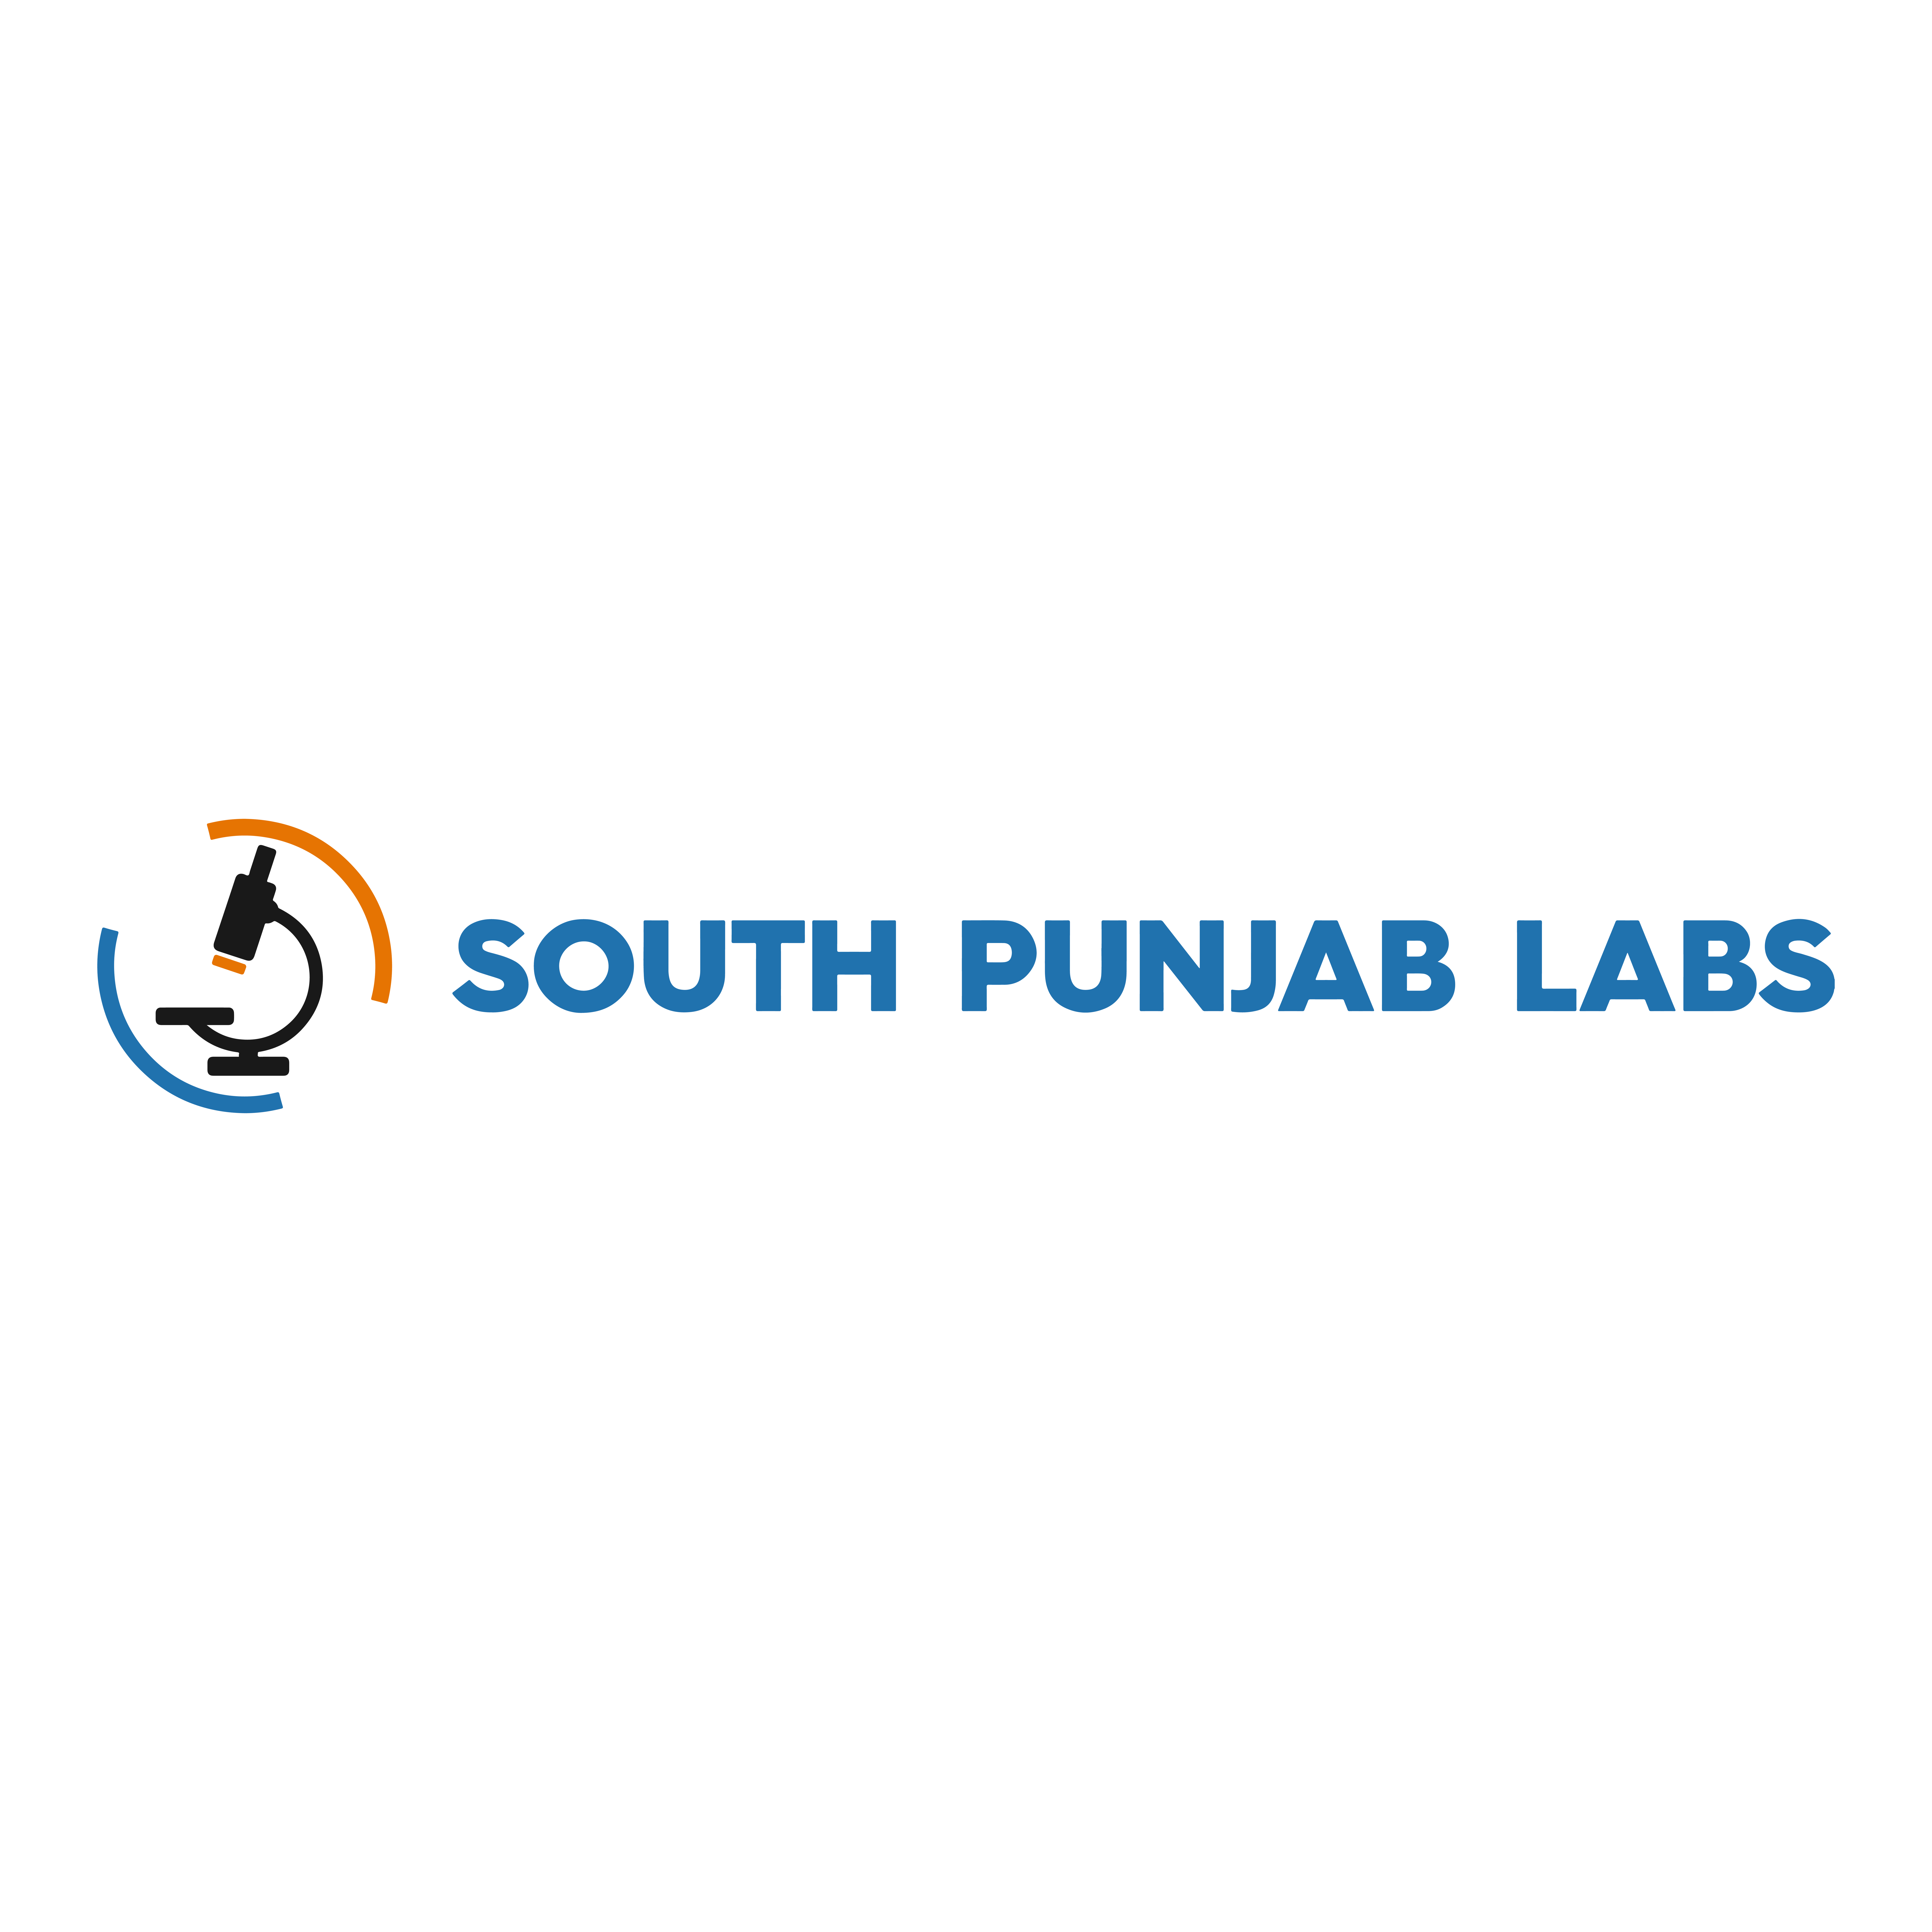 South Punjab Labs